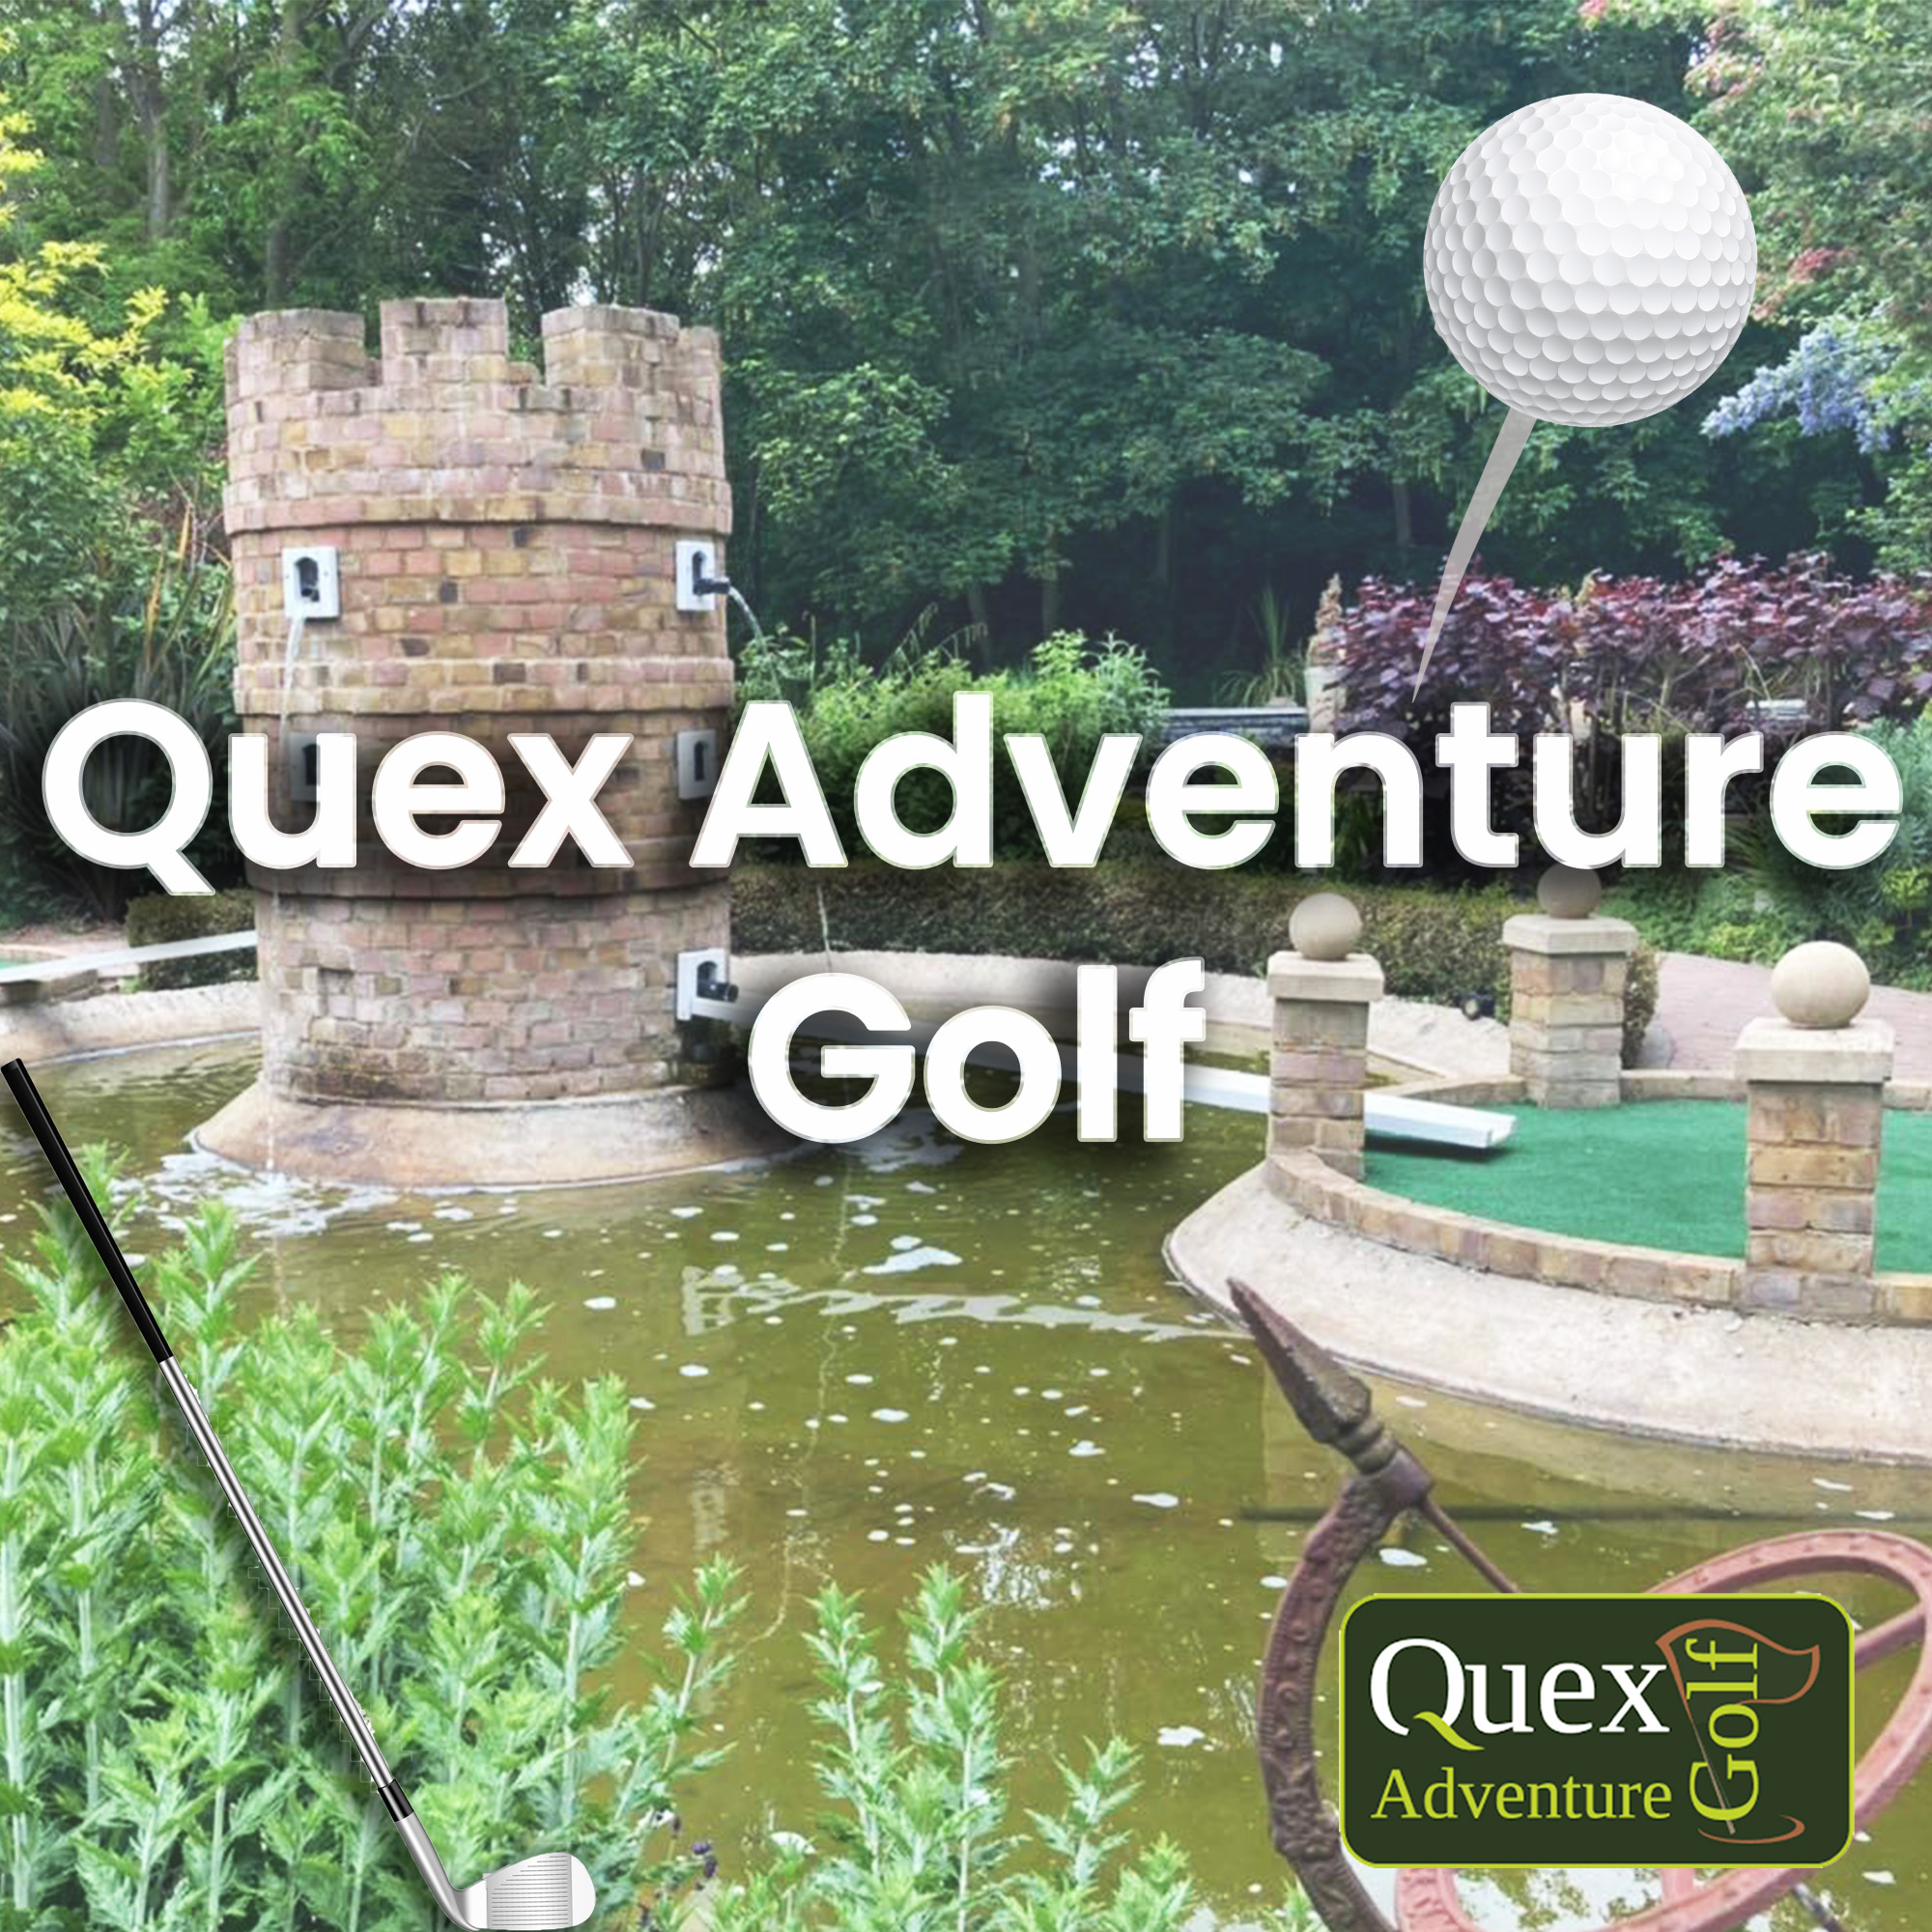 Quex Adventure Golf